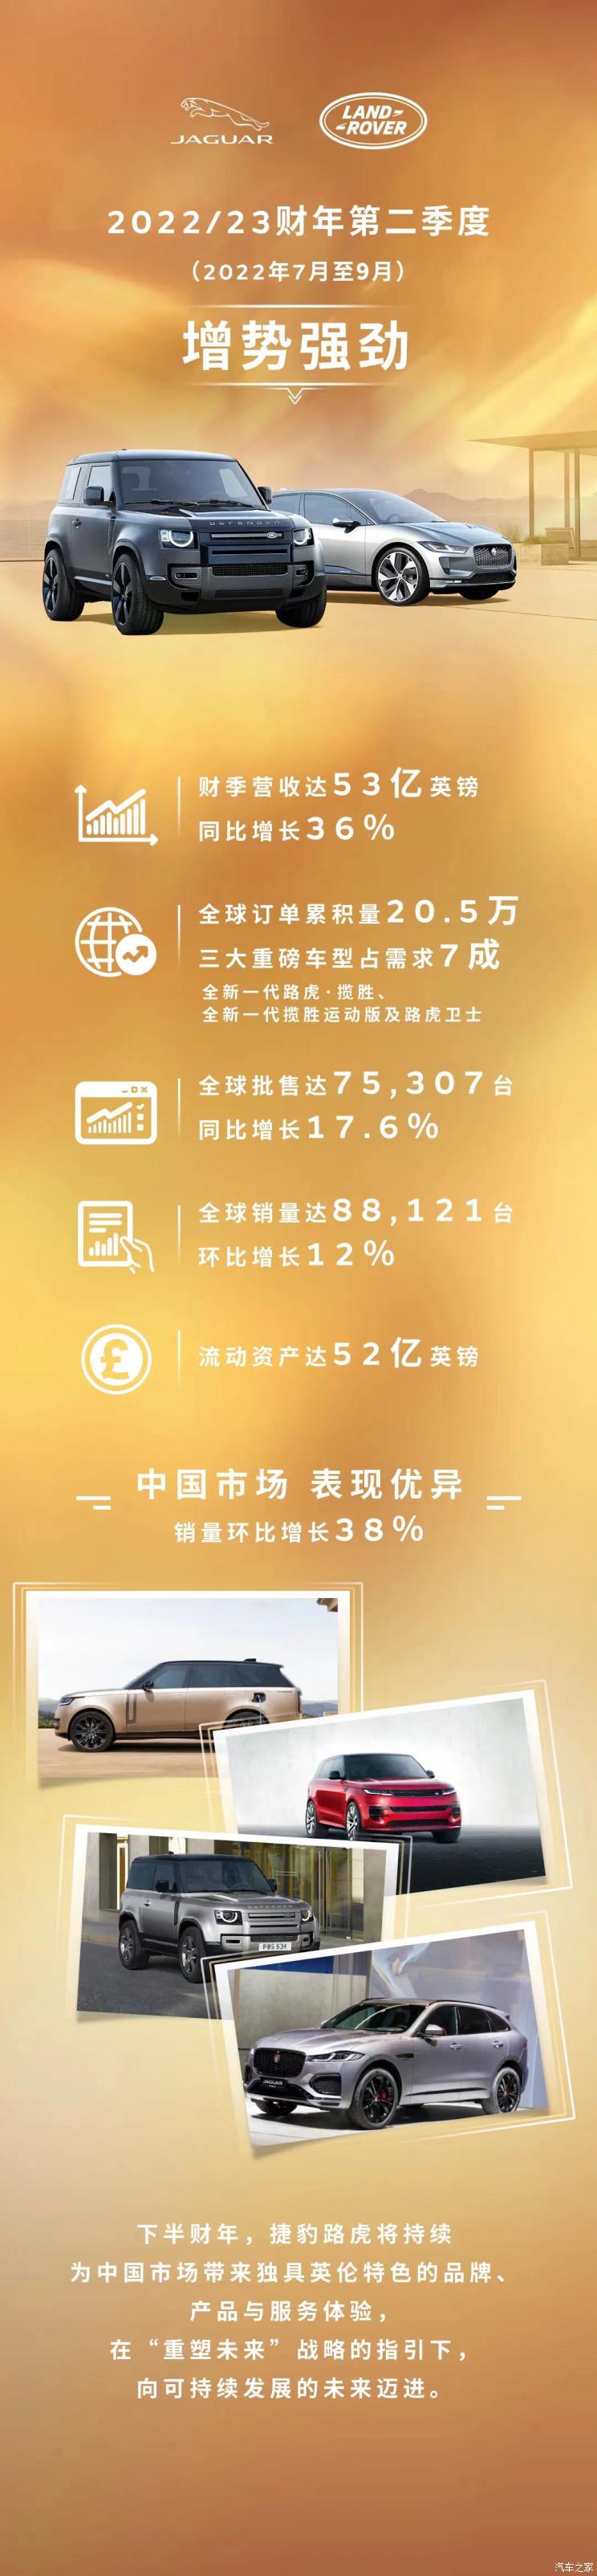 中国销量增长38%捷豹路虎发布最新财报